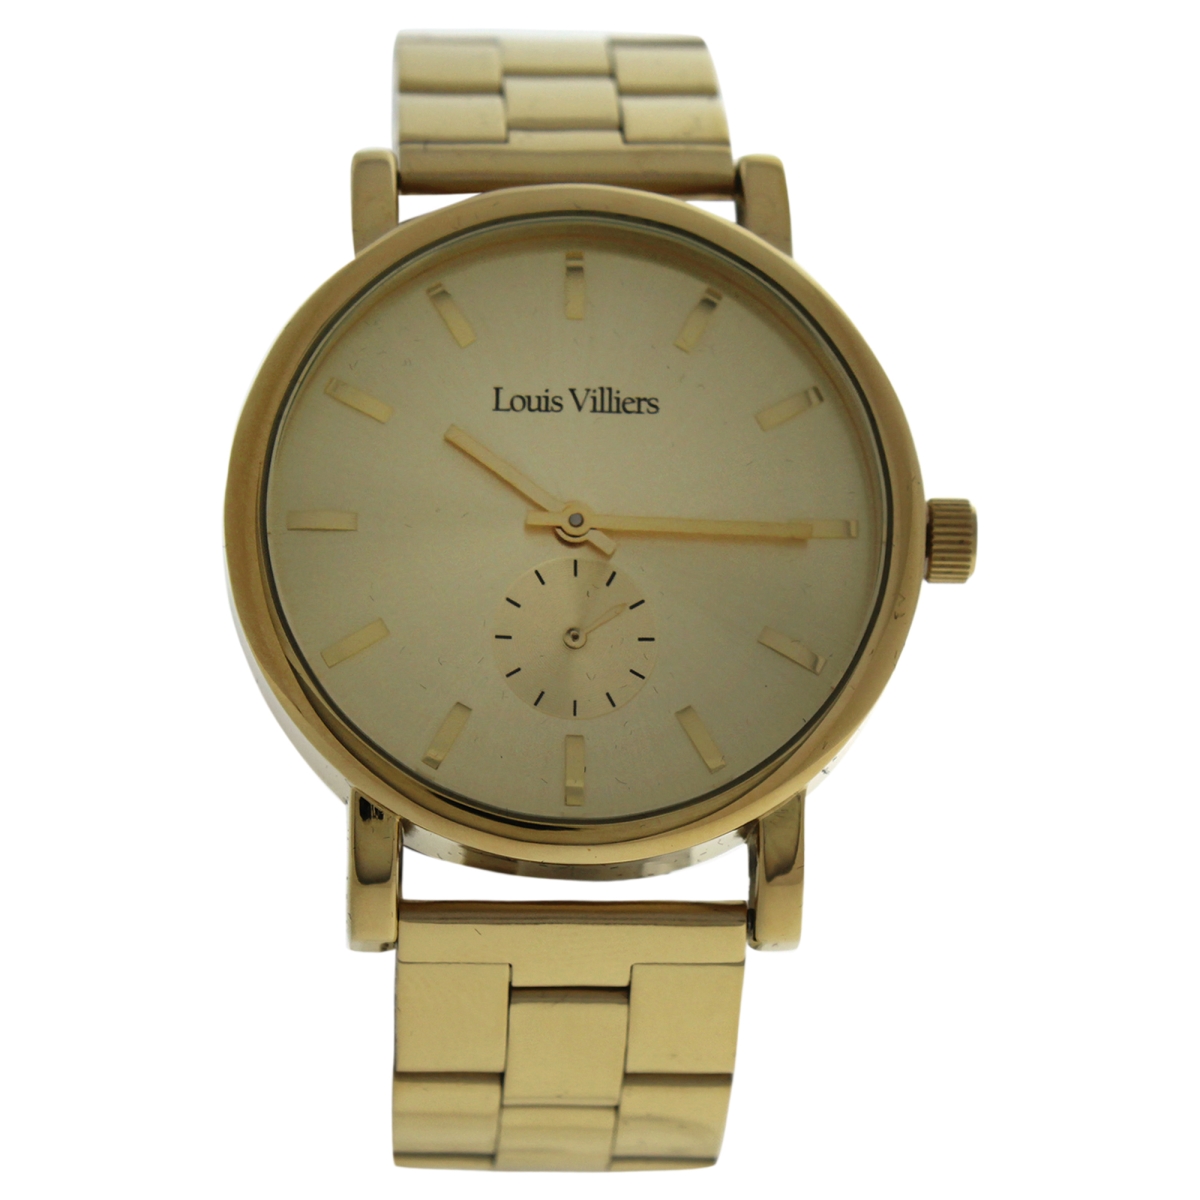 U-wat-1027 Lv2070 Stainless Steel Bracelet Watch For Unisex, Gold